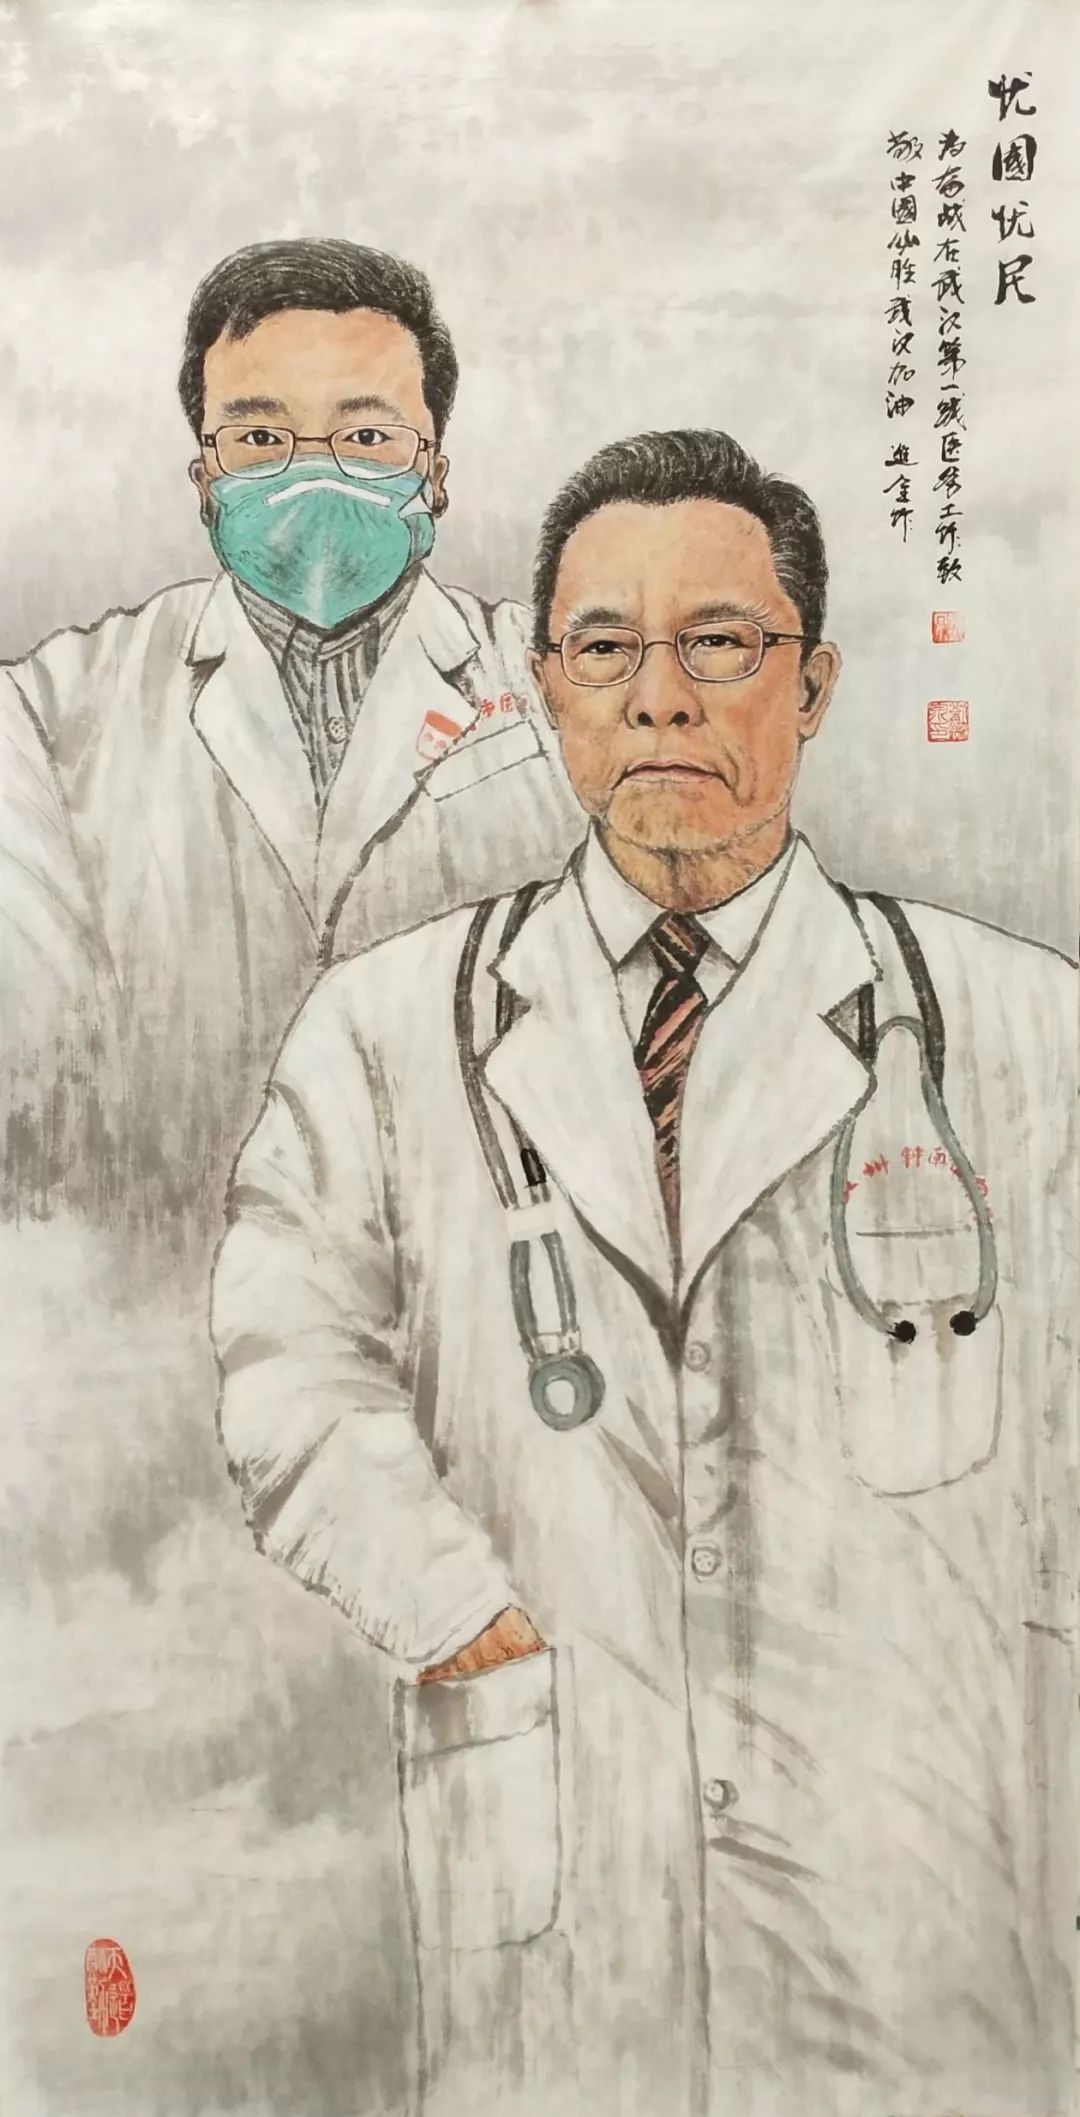 "我不过是治病救人的医生"在抗击非典之后,钟南山做了一件国际上没人